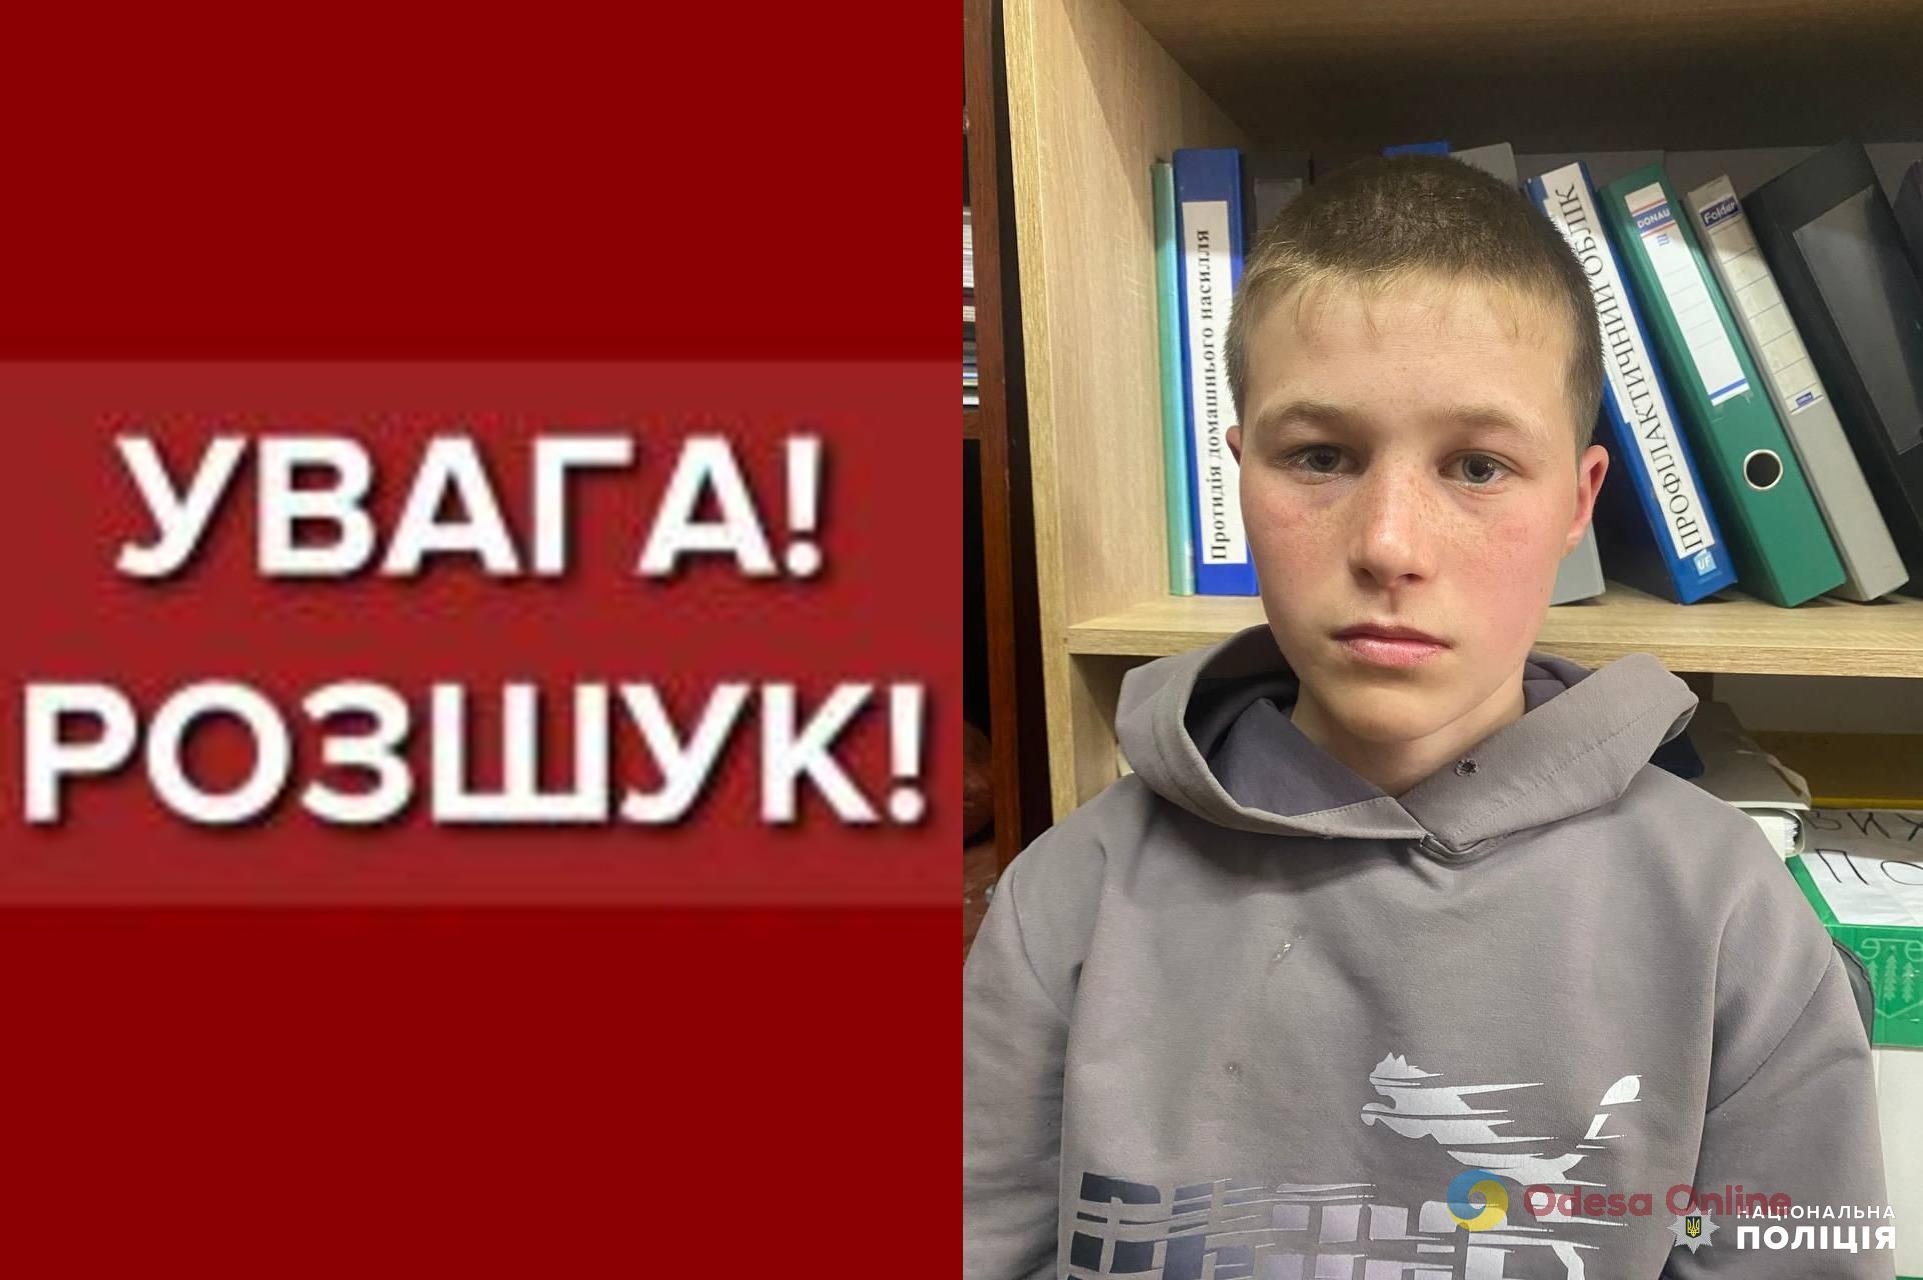 В Одесской области ищут пропавшего 14-летнего мальчика (обновлено)